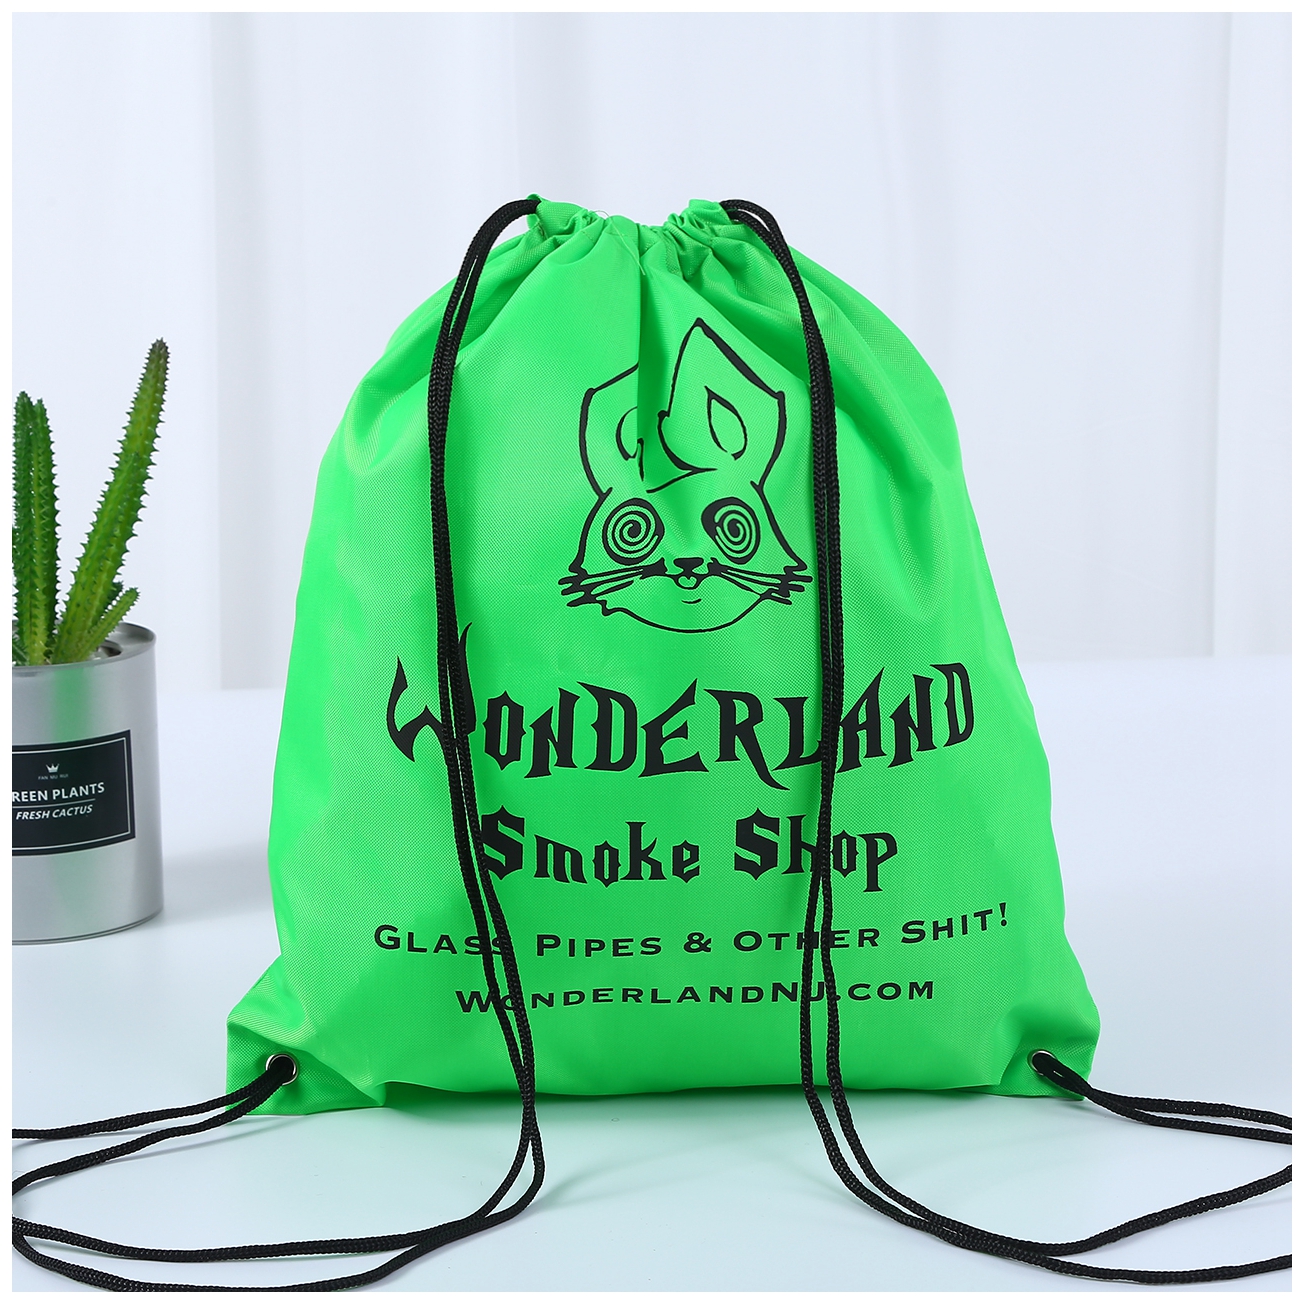 Woderland Smoke Shop Drawstring backpack